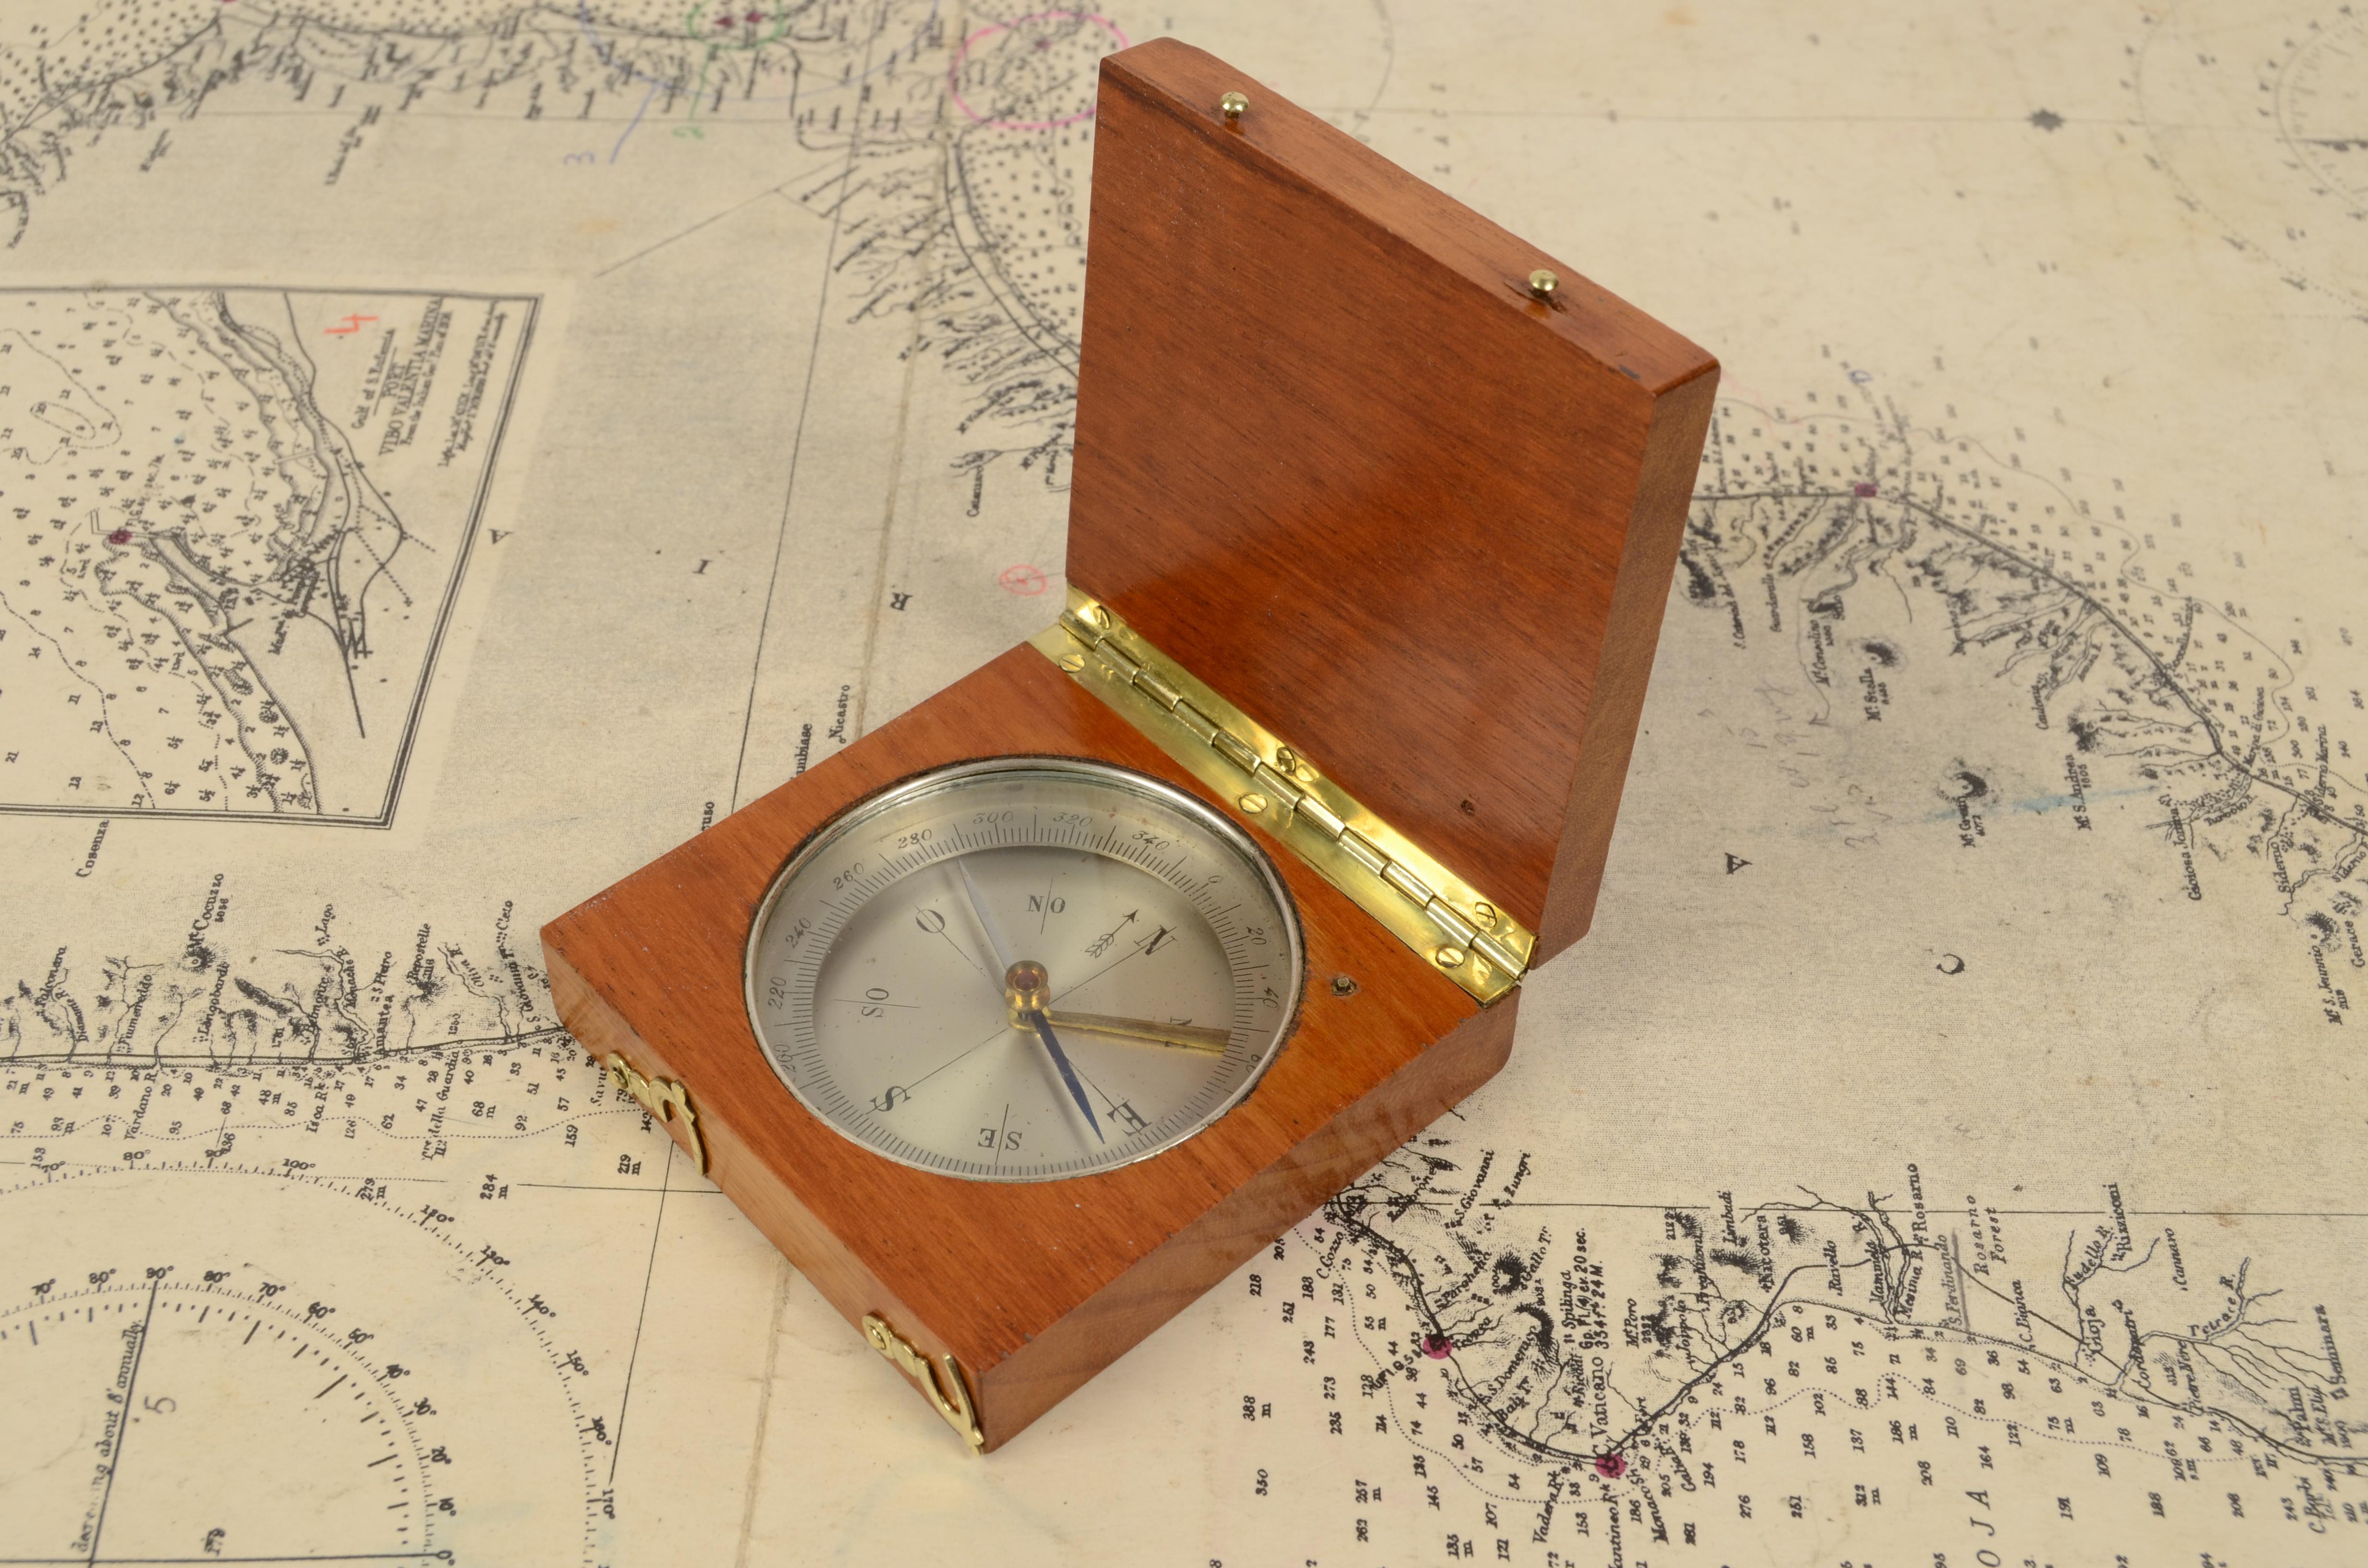 Magnetische topographische Kompass, von Eiche und Messing; Instrument, bestehend aus einem magnetisierten Nadel frei auf einer horizontalen Ebene zu drehen, die Markierung mit der Spitze der Nadel die Richtung des magnetischen Nord, Kompass-Karte